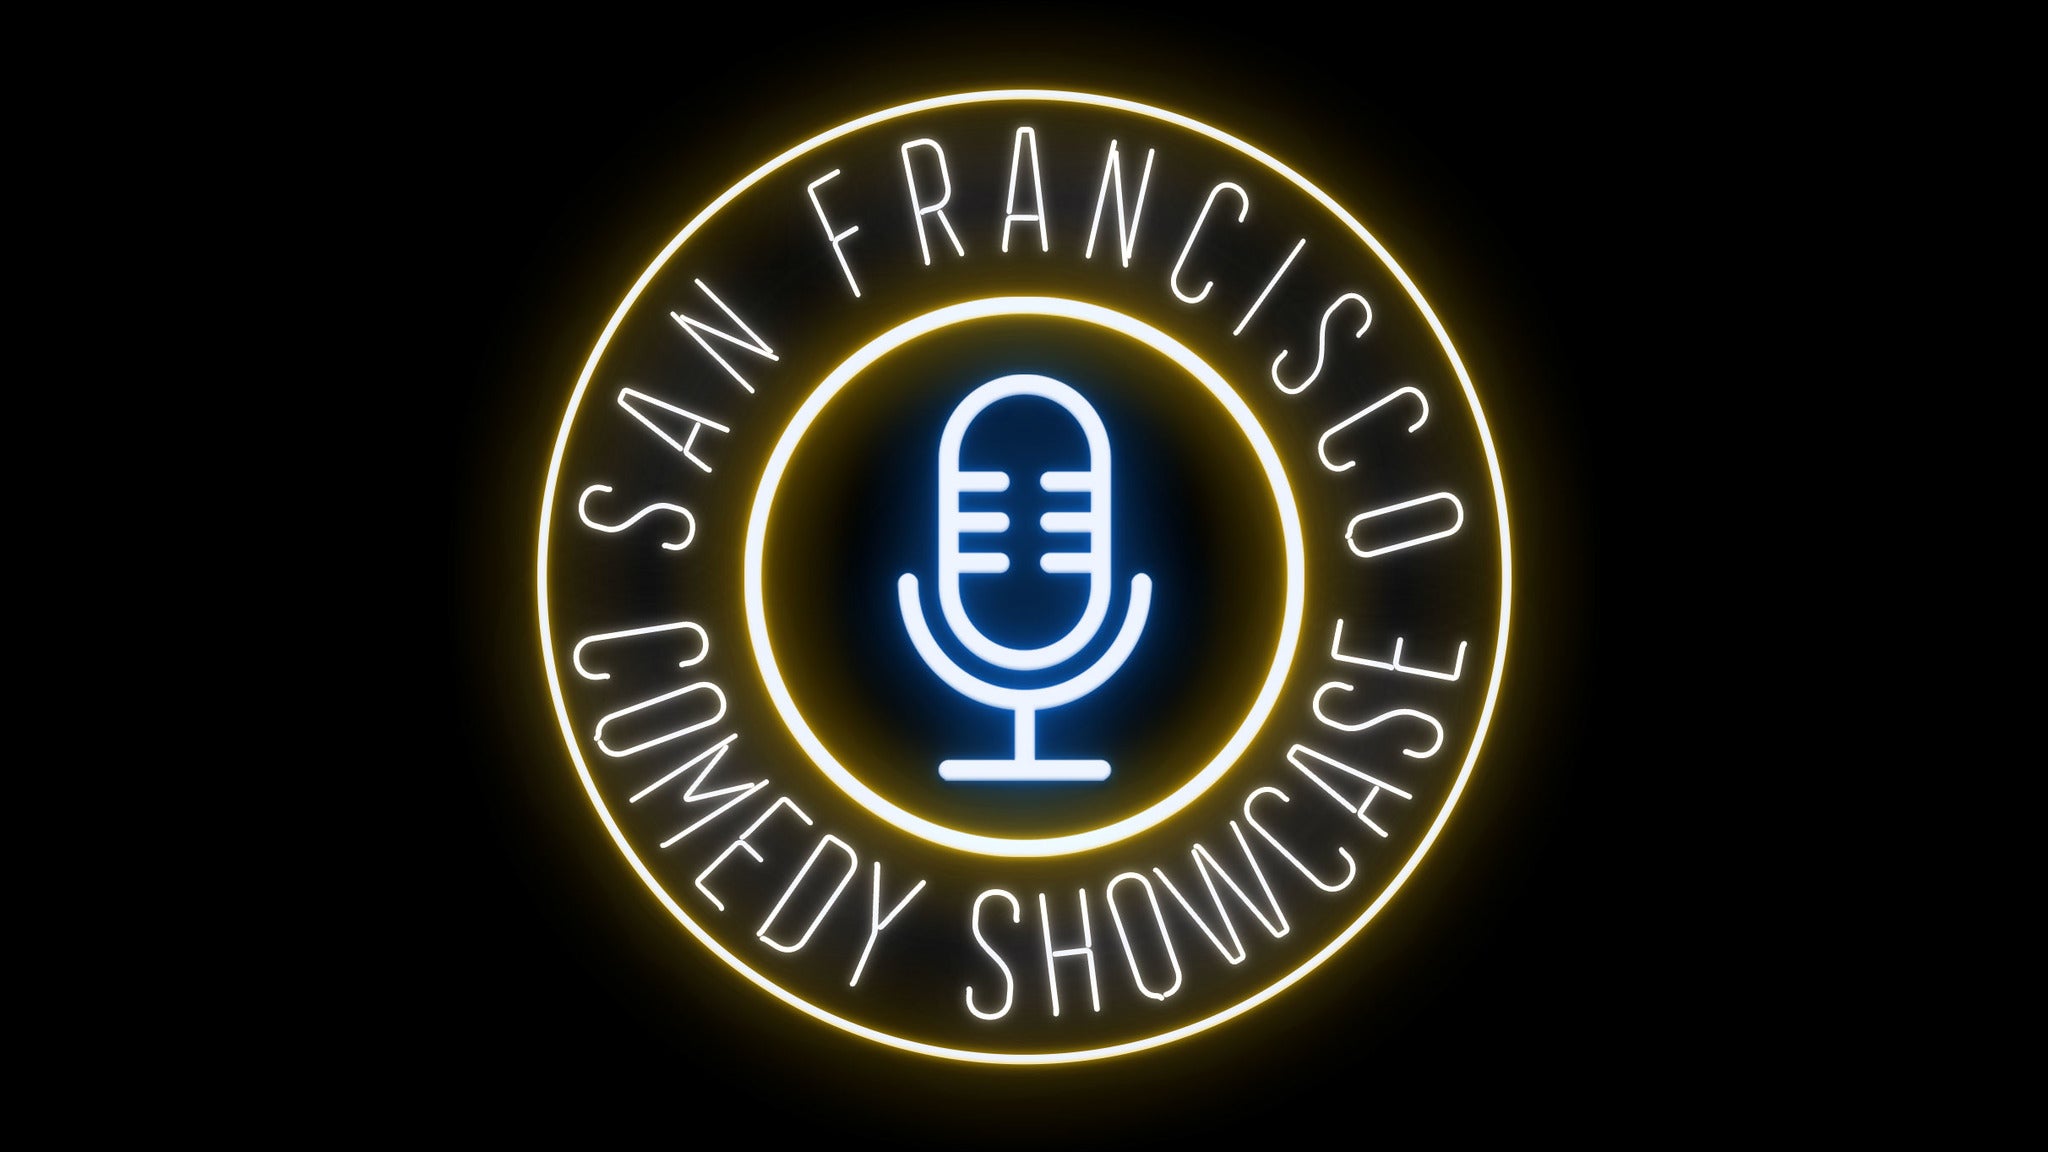 S. F. Comedy Showcase - San Francisco, CA 94111